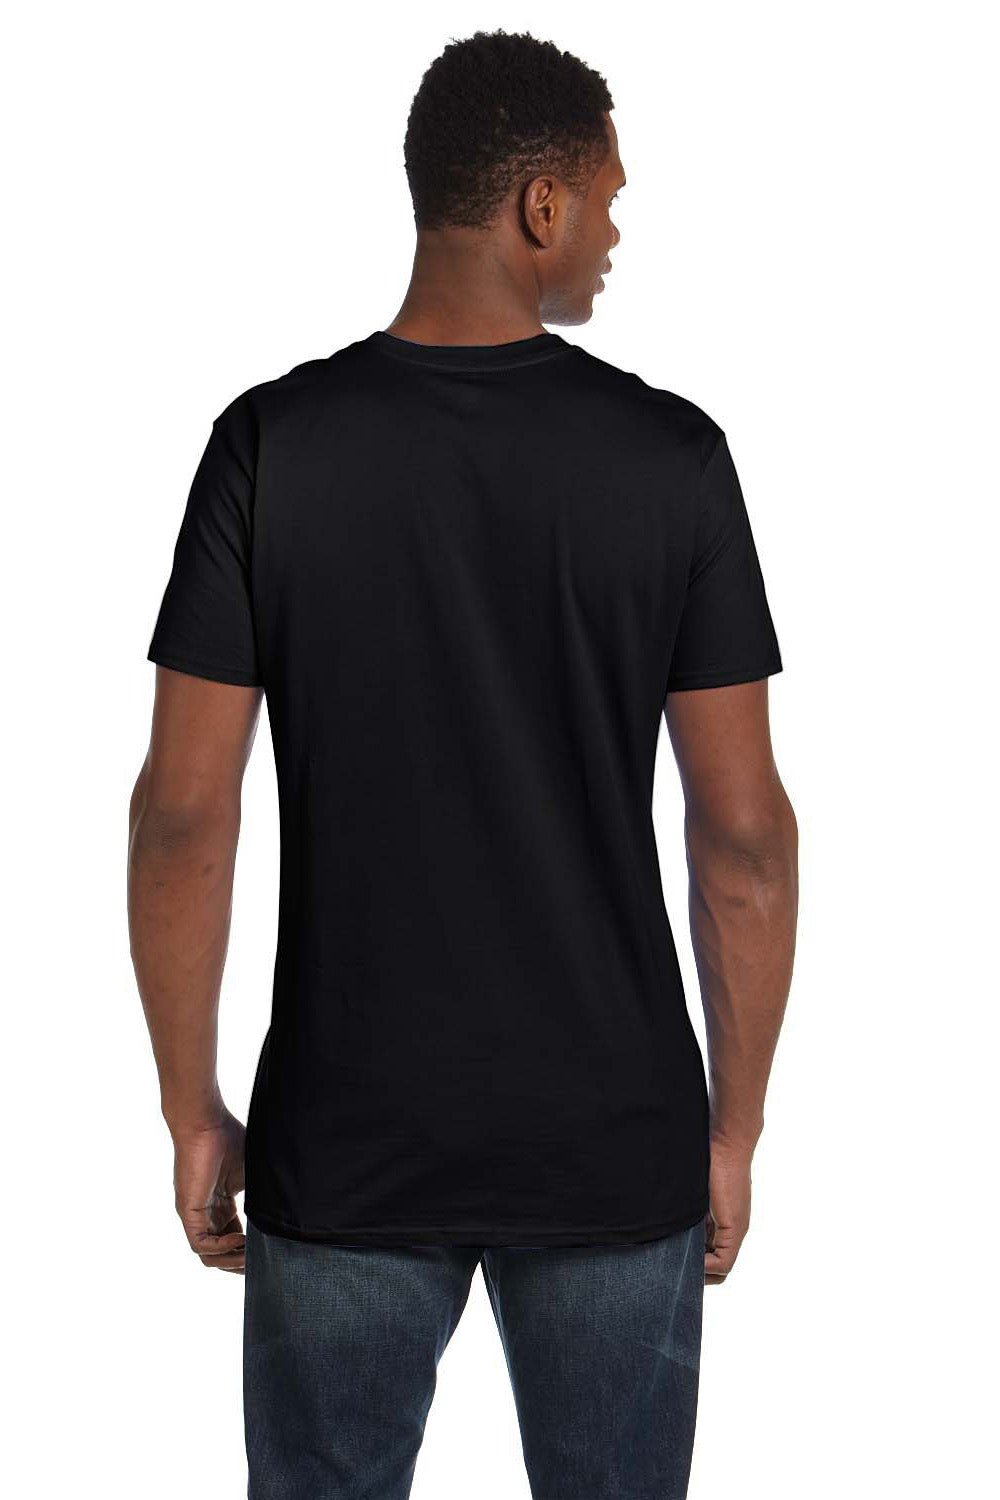 Hanes 498PT Mens Perfect-T PreTreat Short Sleeve Crewneck T-Shirt Black Back